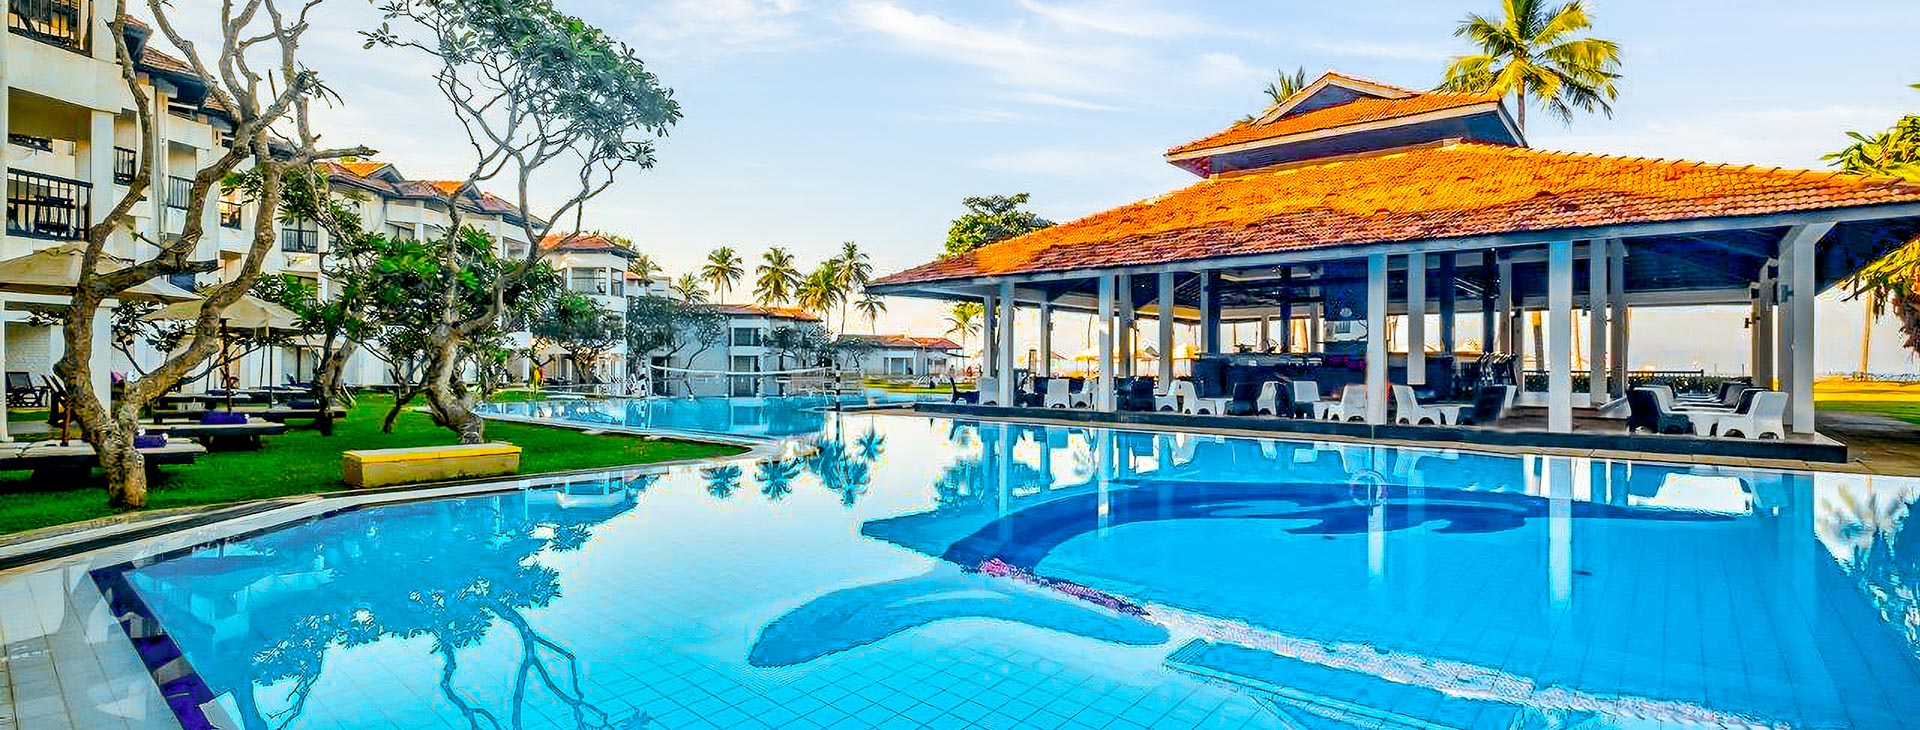 Club Hotel Dolphin - dovolená na Srí Lance Obrázek4